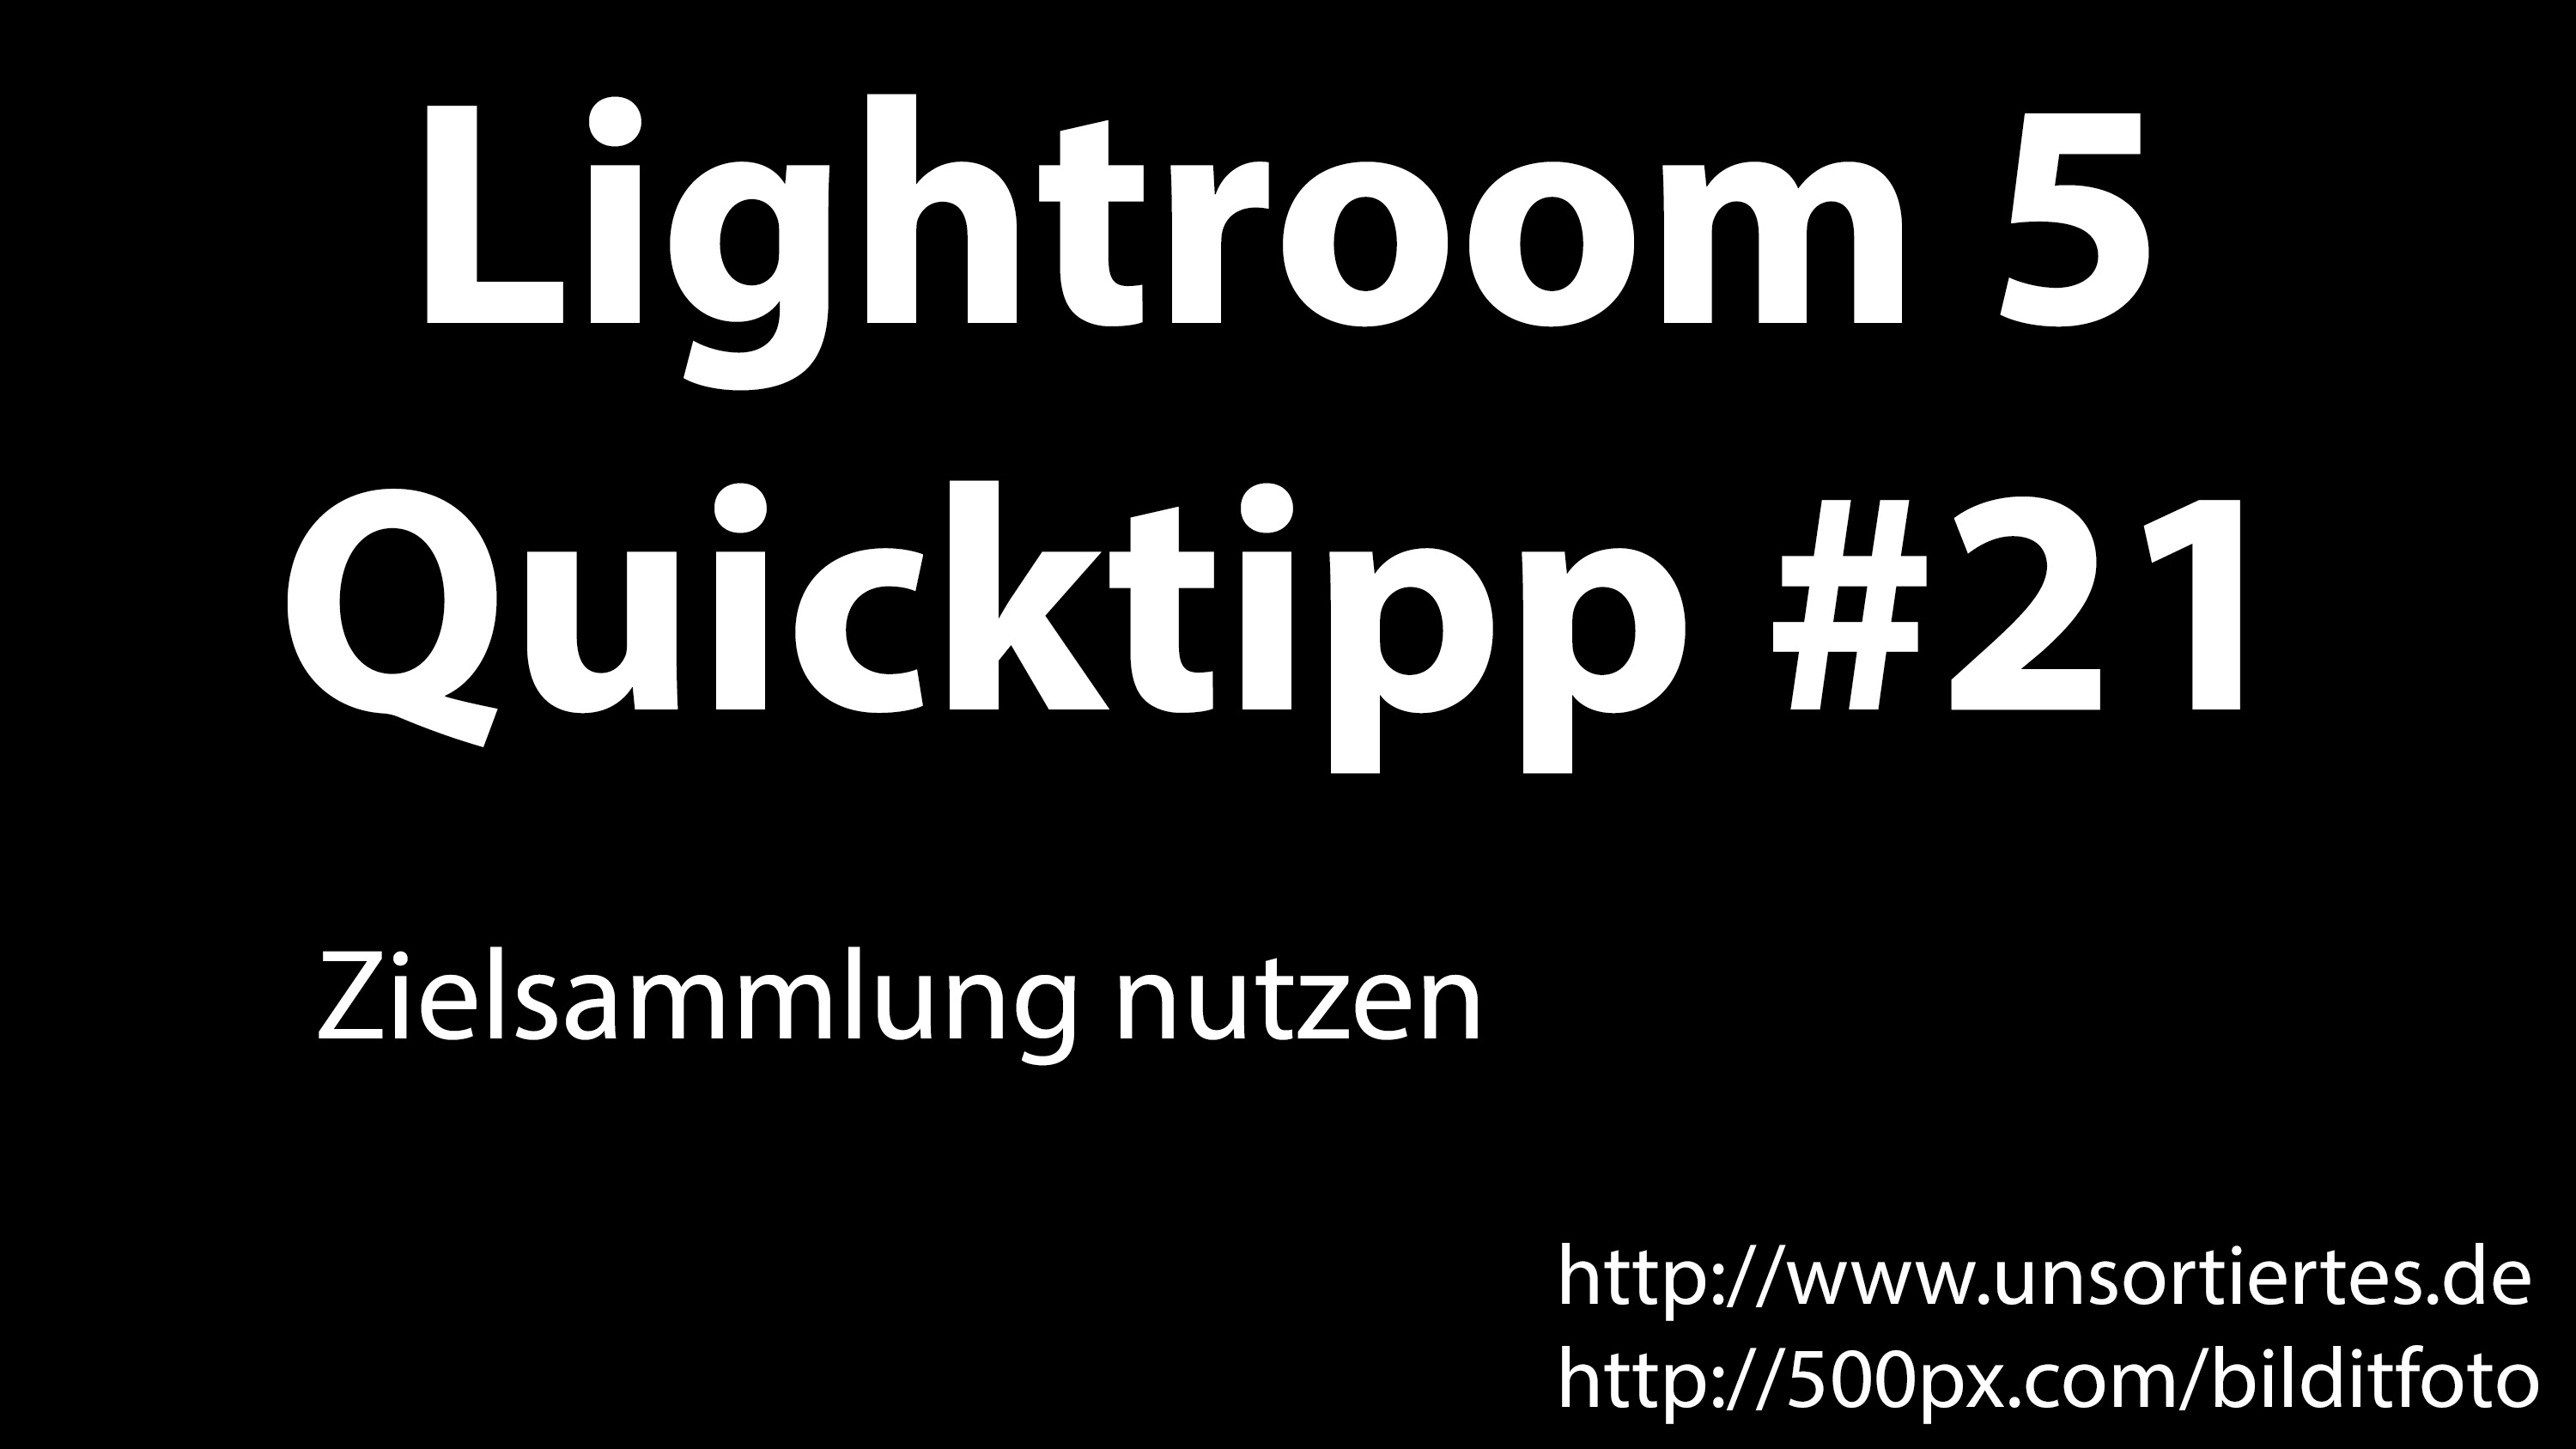 lightroom 5 quicktipp